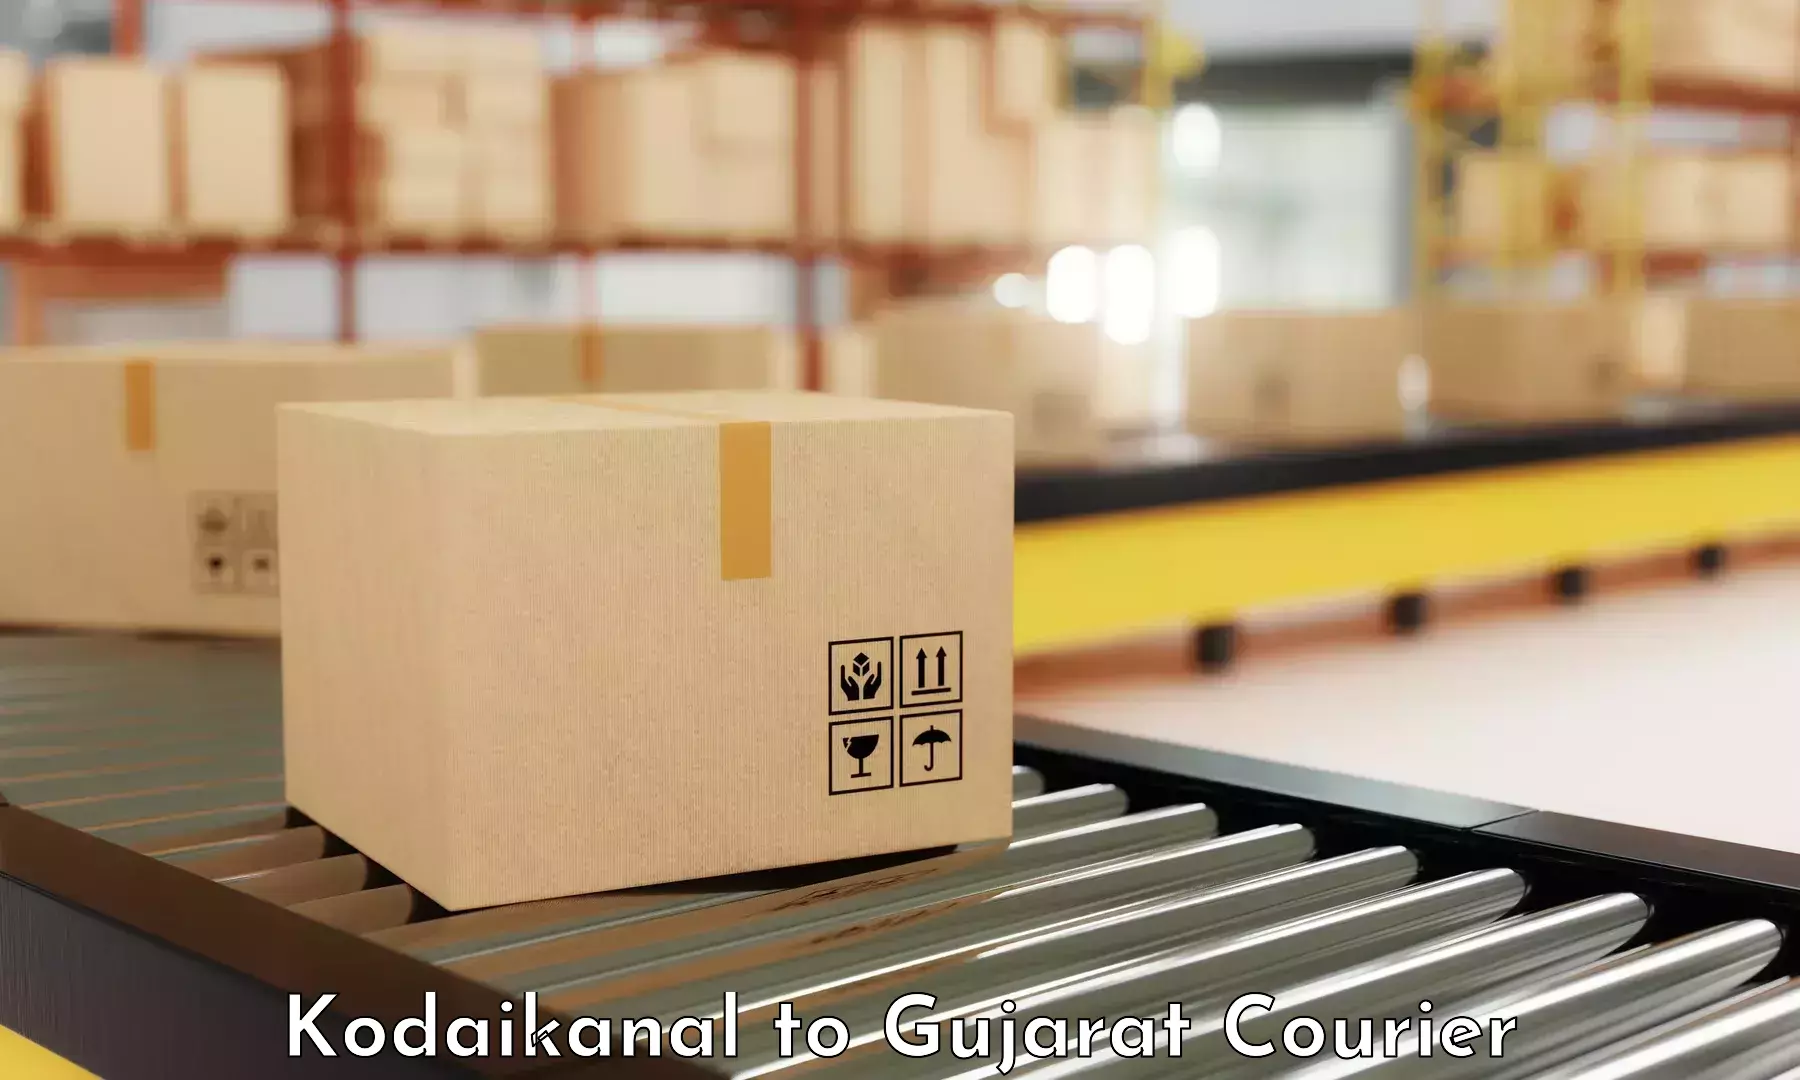 Courier app Kodaikanal to Gujarat